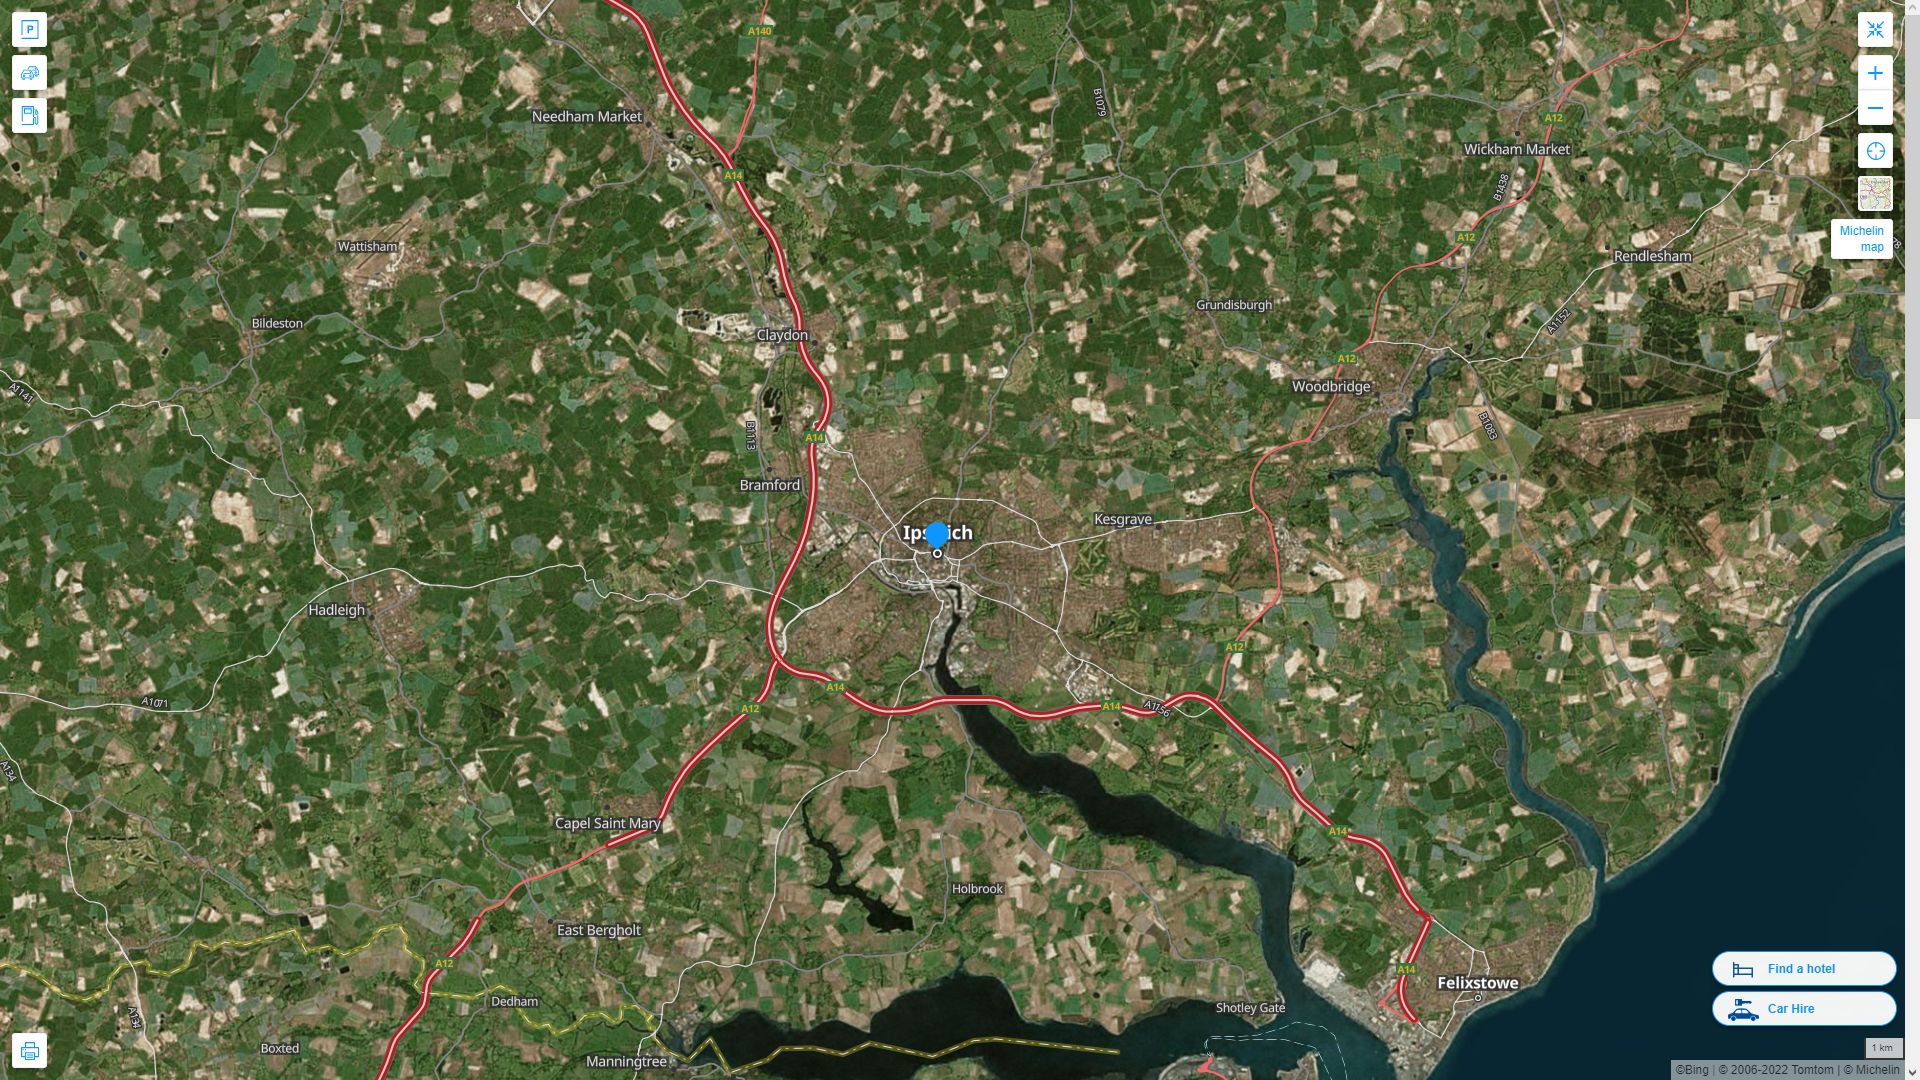 ipswich Royaume Uni Autoroute et carte routiere avec vue satellite